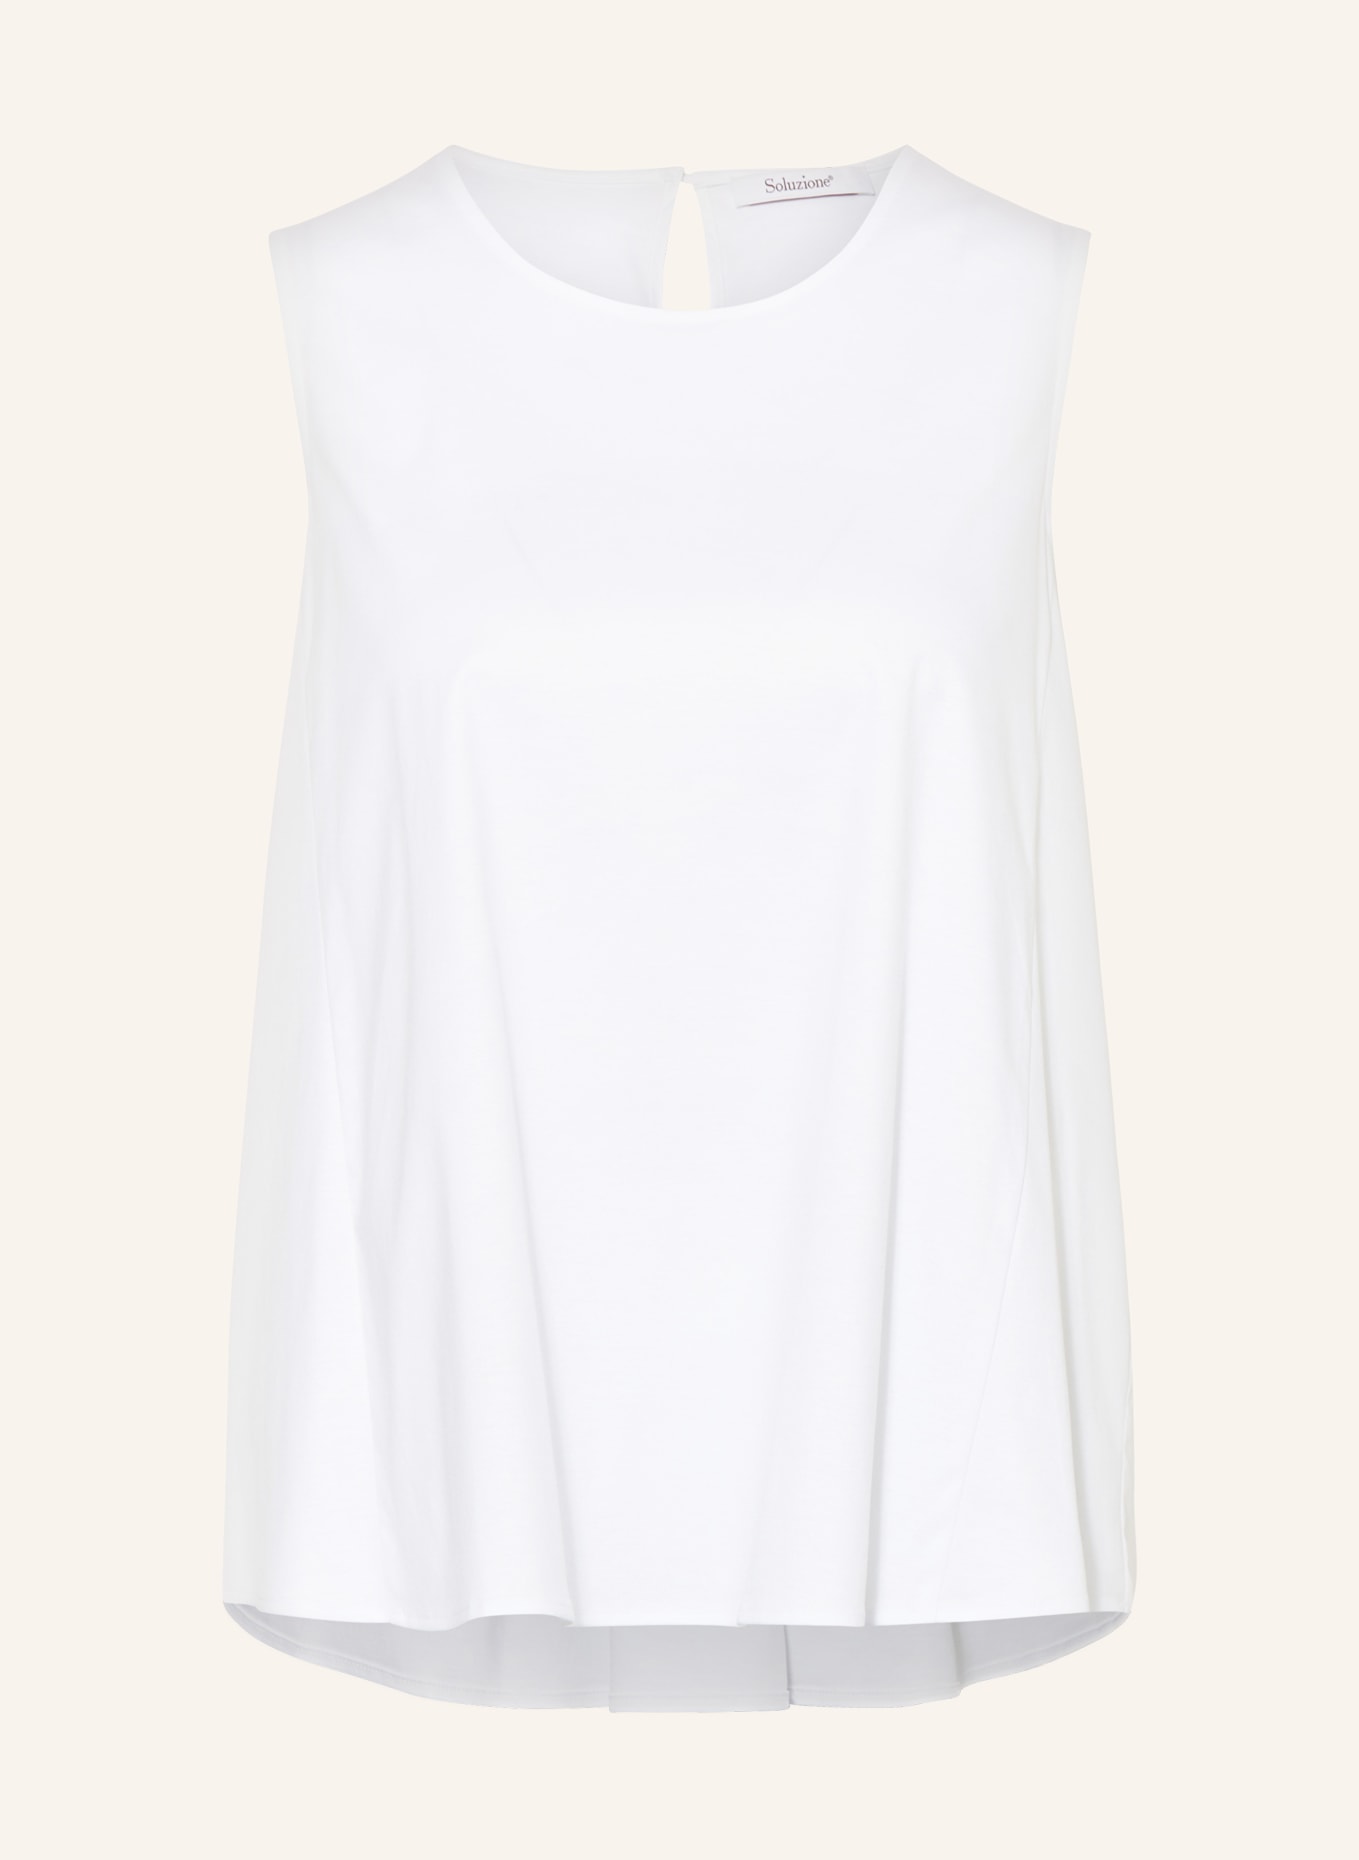 Soluzione Blouse top, Color: WHITE (Image 1)